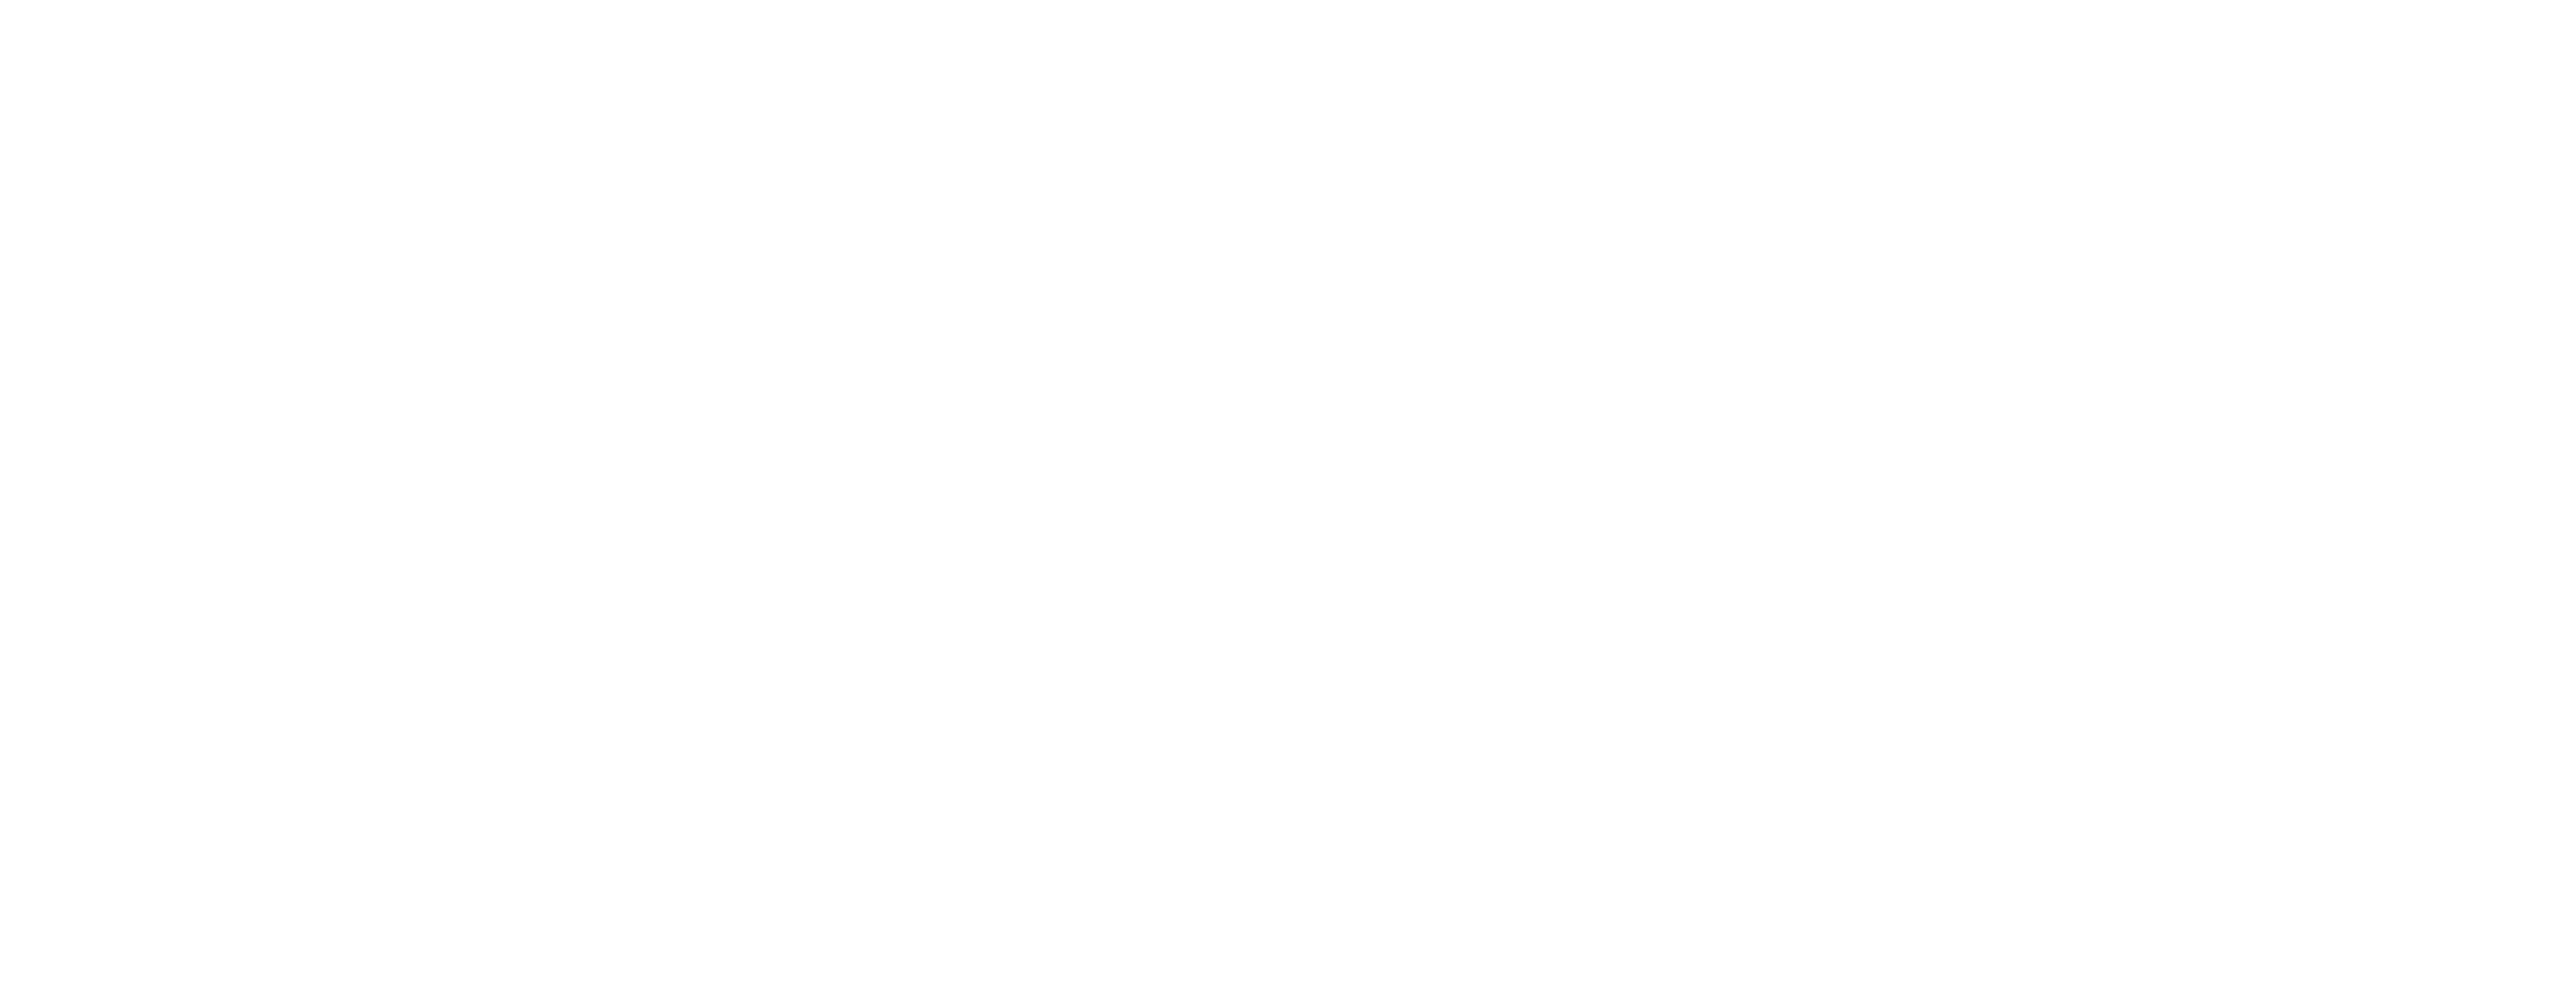 Goochelenindekerk_Logo_2